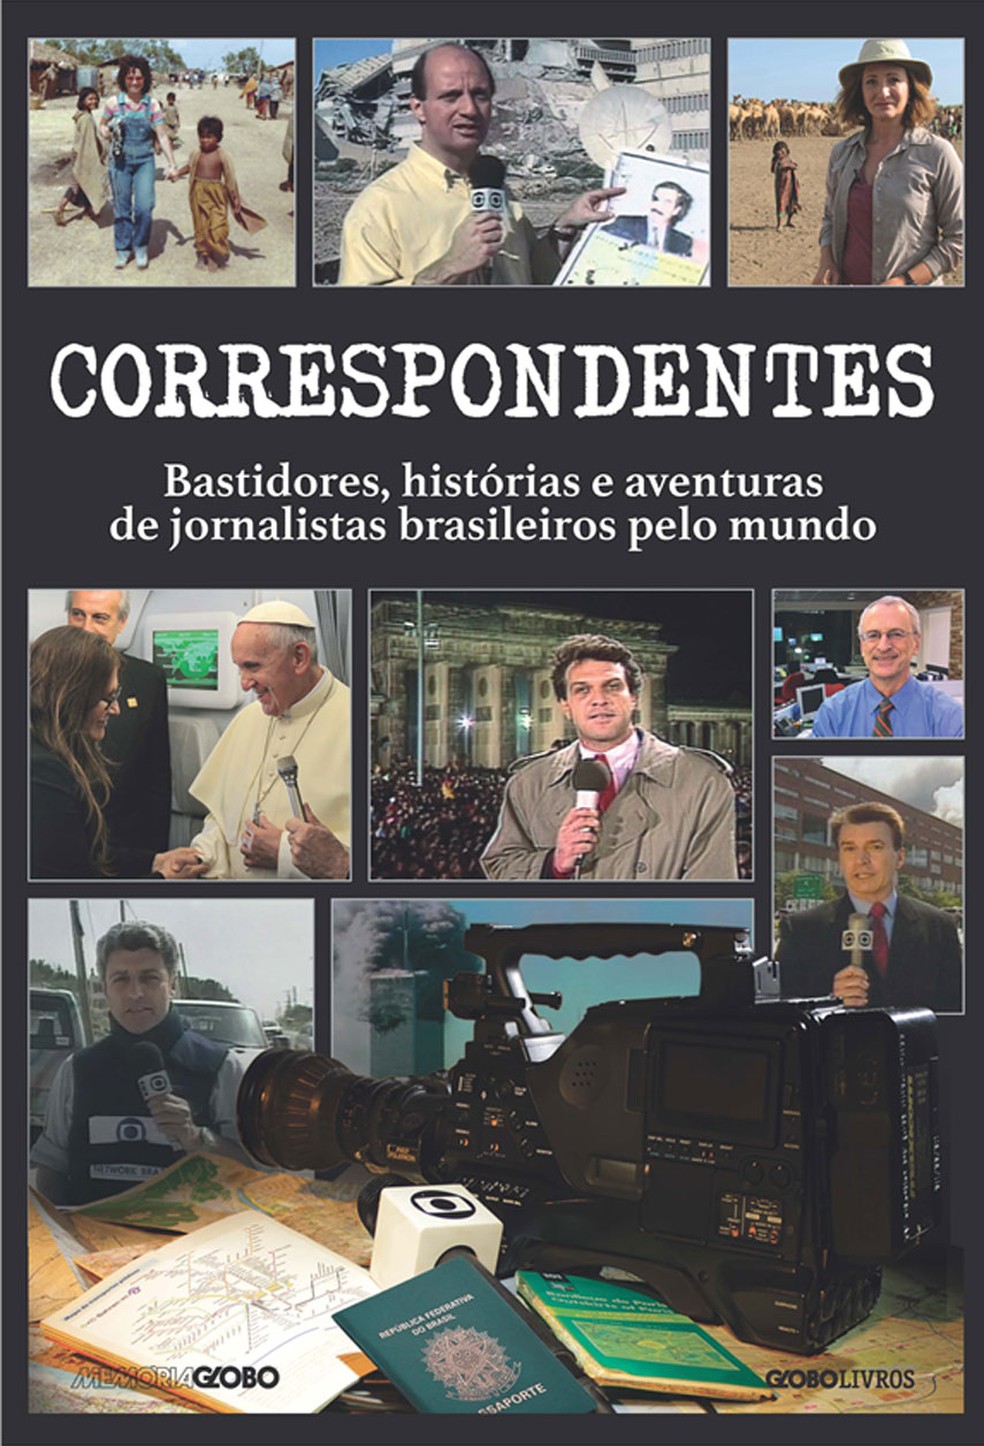 Livro "Correspondentes" será lançado esta semana (Foto: Divulgação)